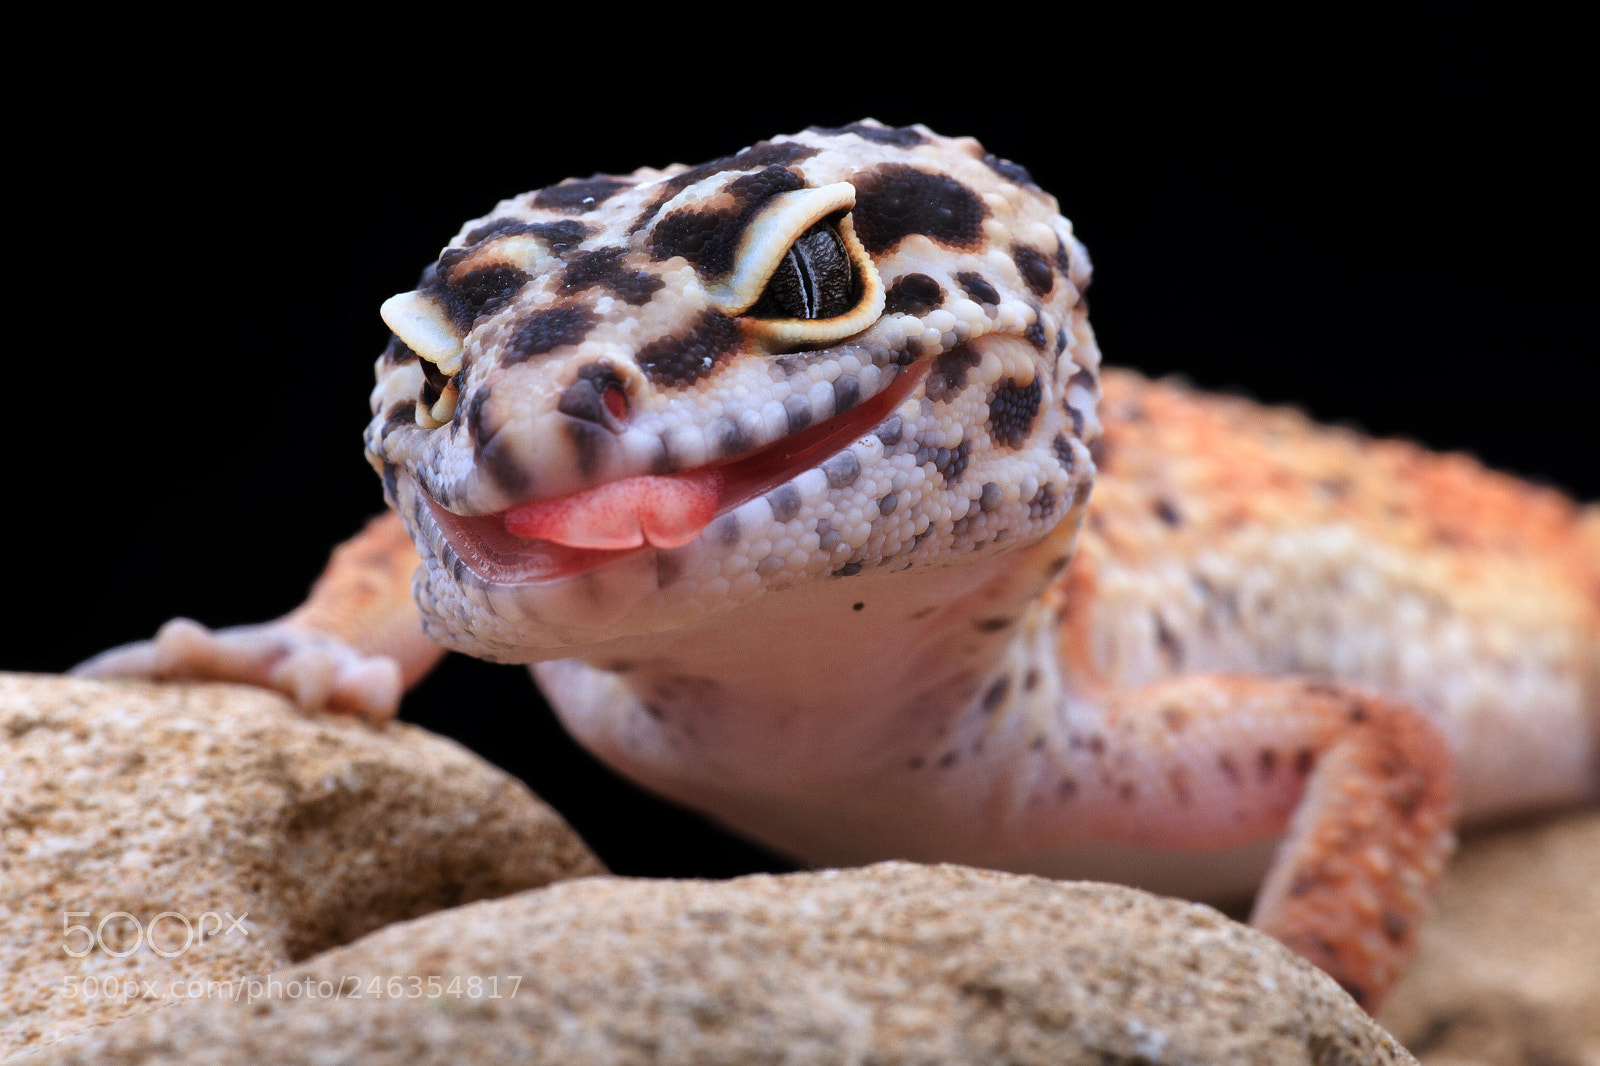 Canon EOS 7D sample photo. Gecko, lizard photography